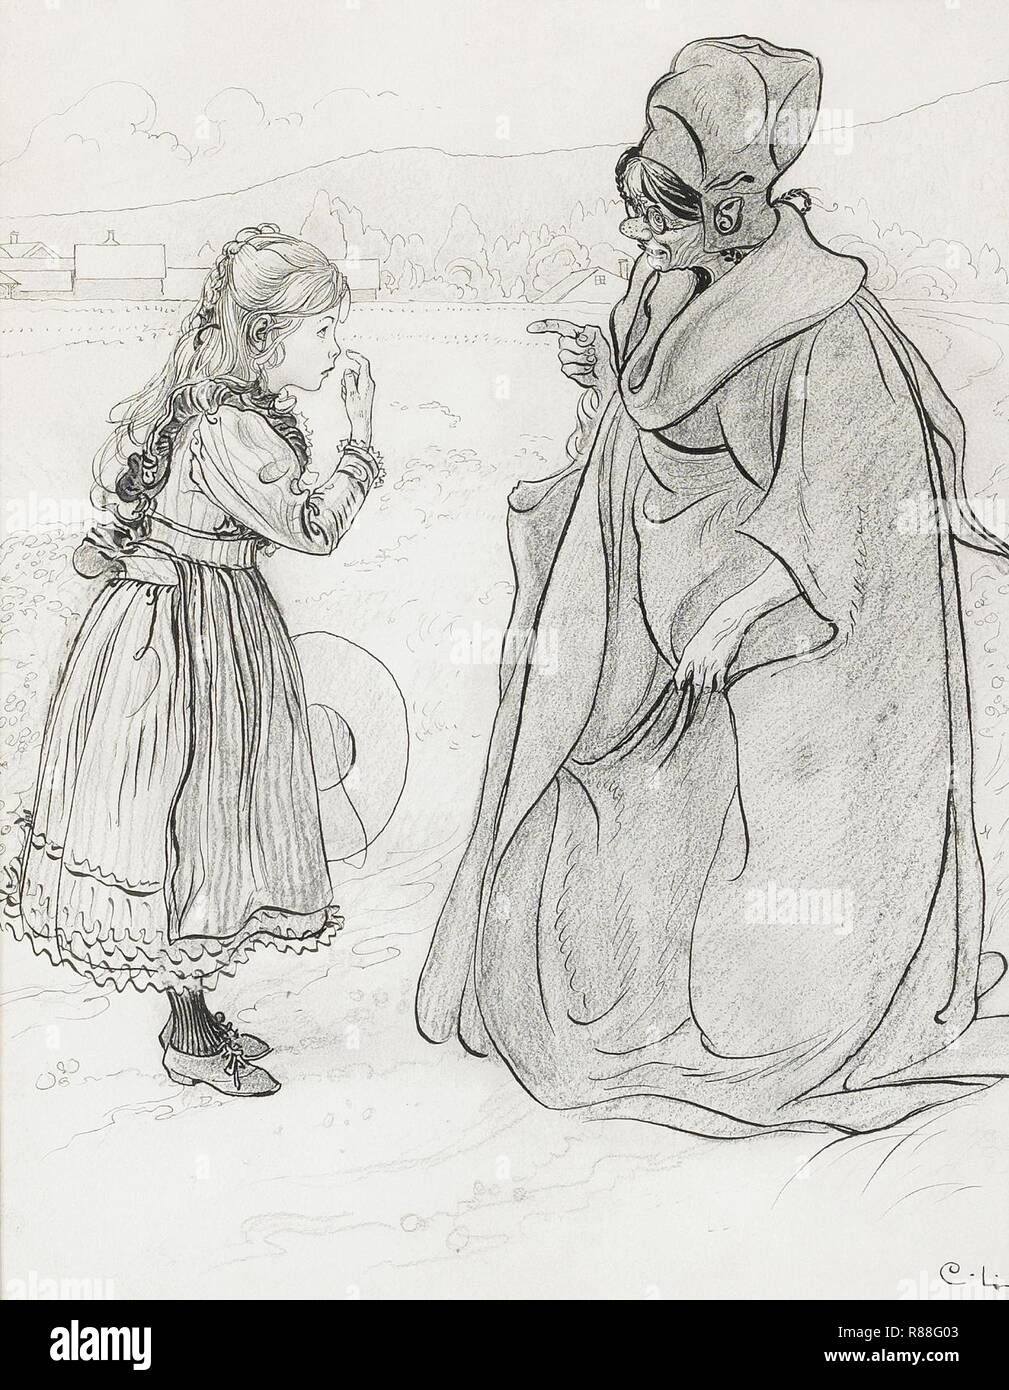 Carl Larsson - Le conte de fées de Lilli's nose 1900. Banque D'Images